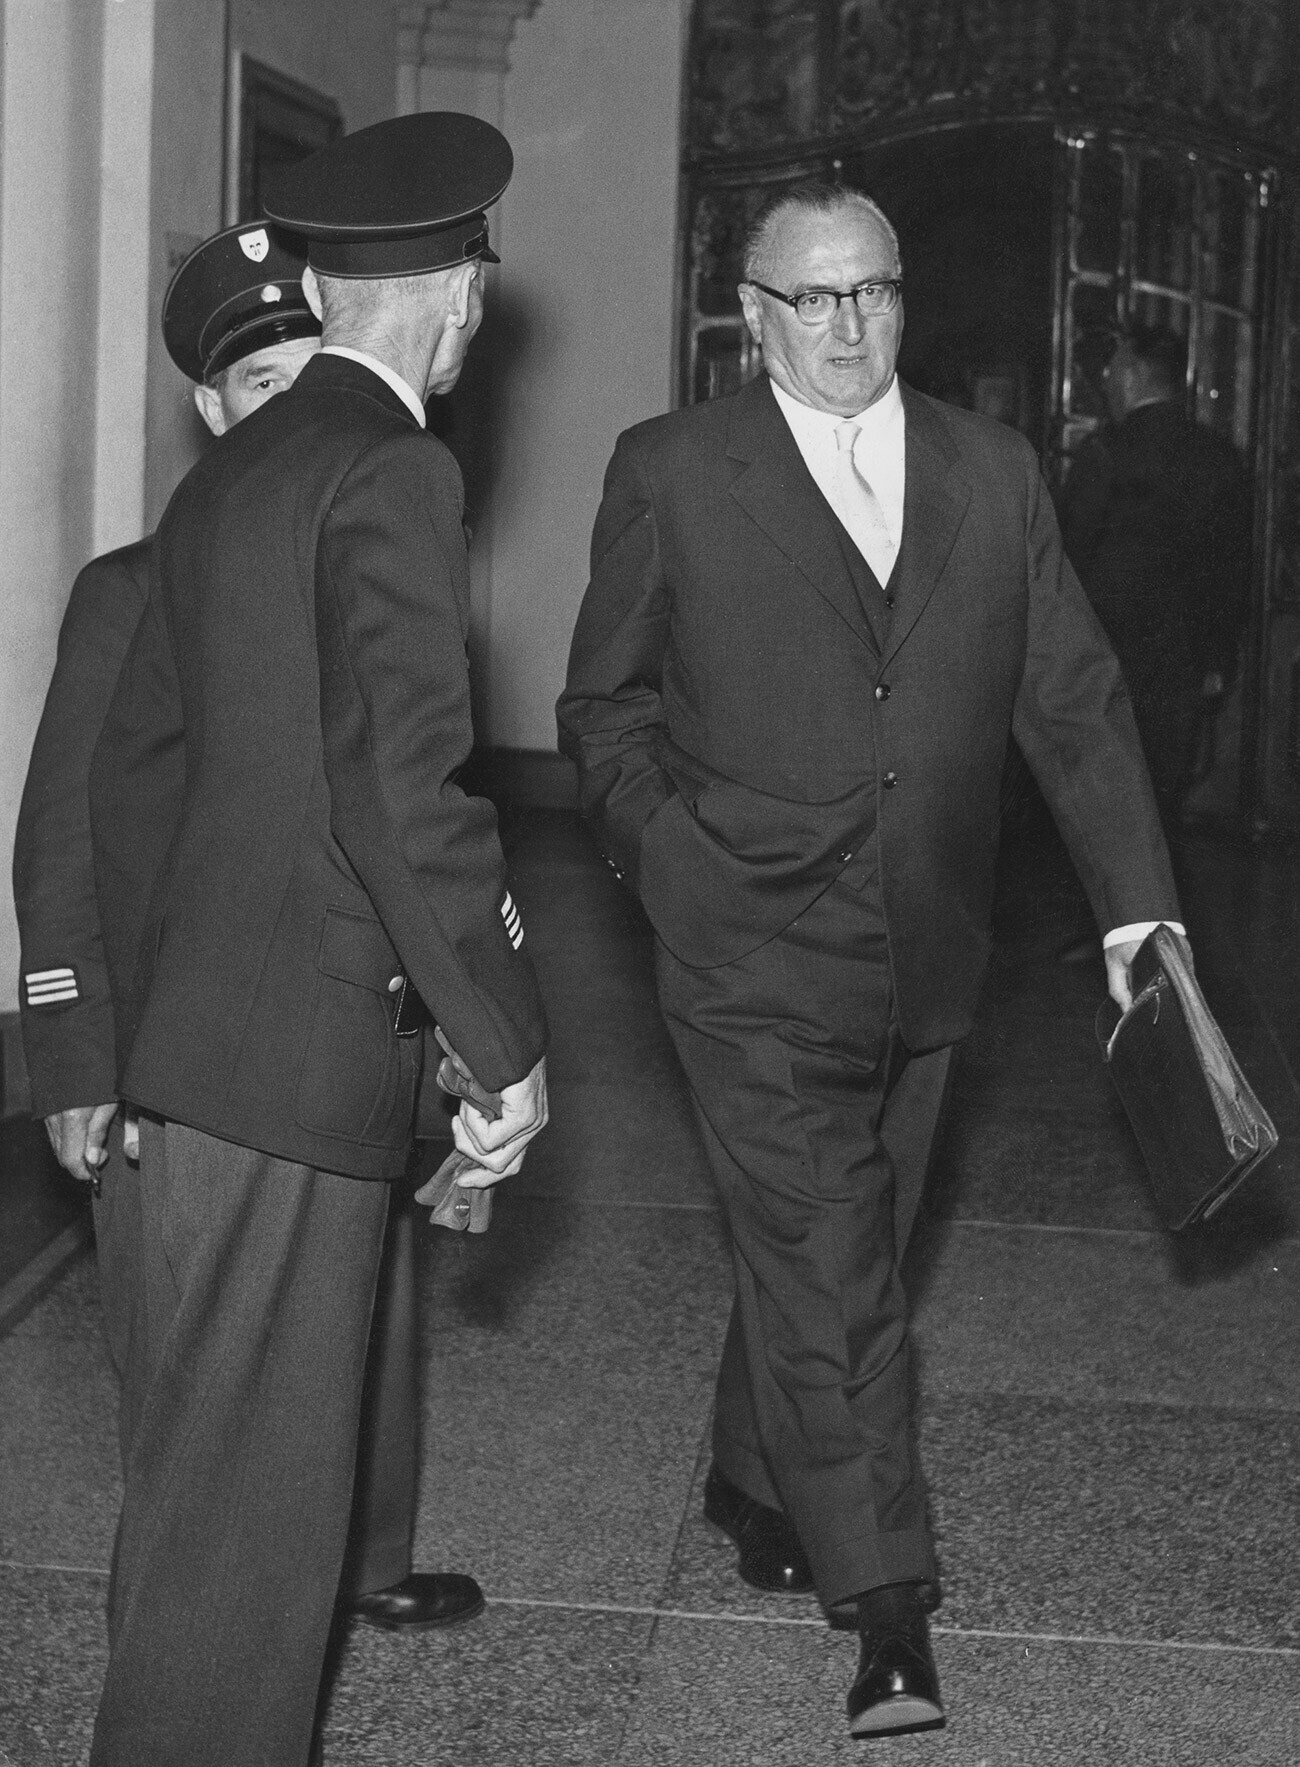 El mariscal de campo alemán Ferdinand Schörner entra en la sala del tribunal durante su juicio en Alemania el 4 de octubre de 1957.